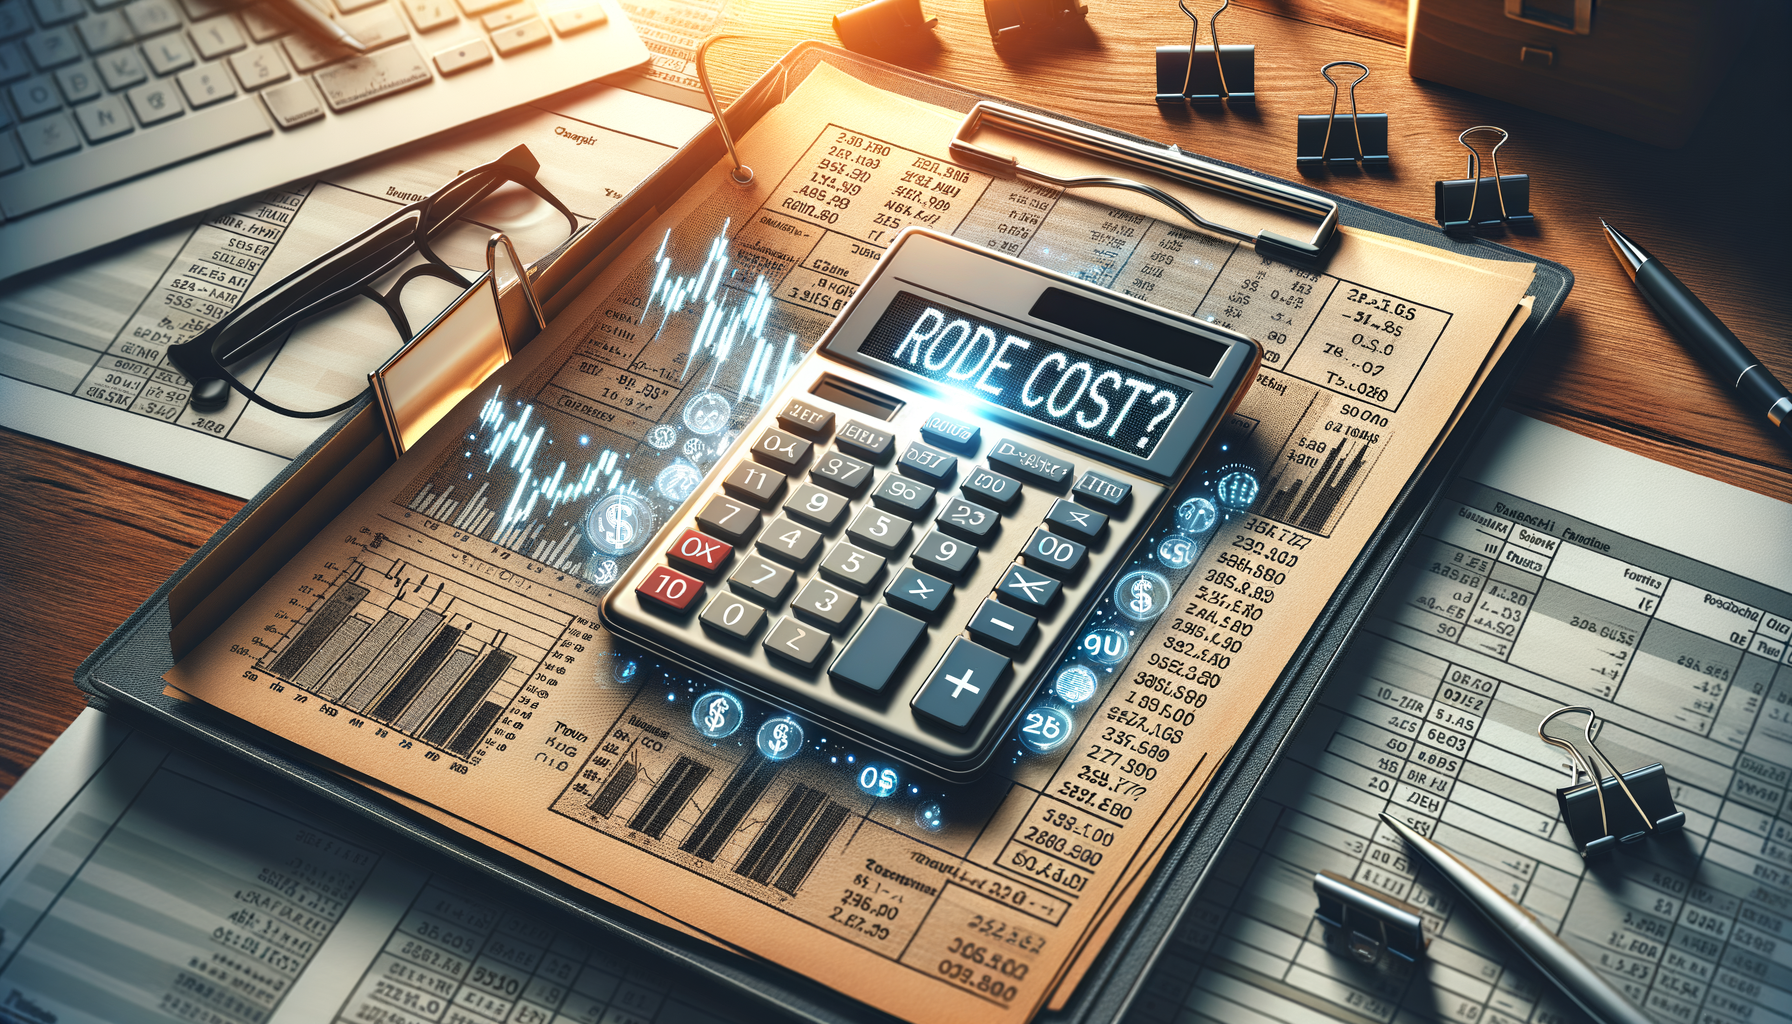 Bild von einem Taschenrechner und Finanzdokumenten, die die Berechnung von Handelskosten zeigen